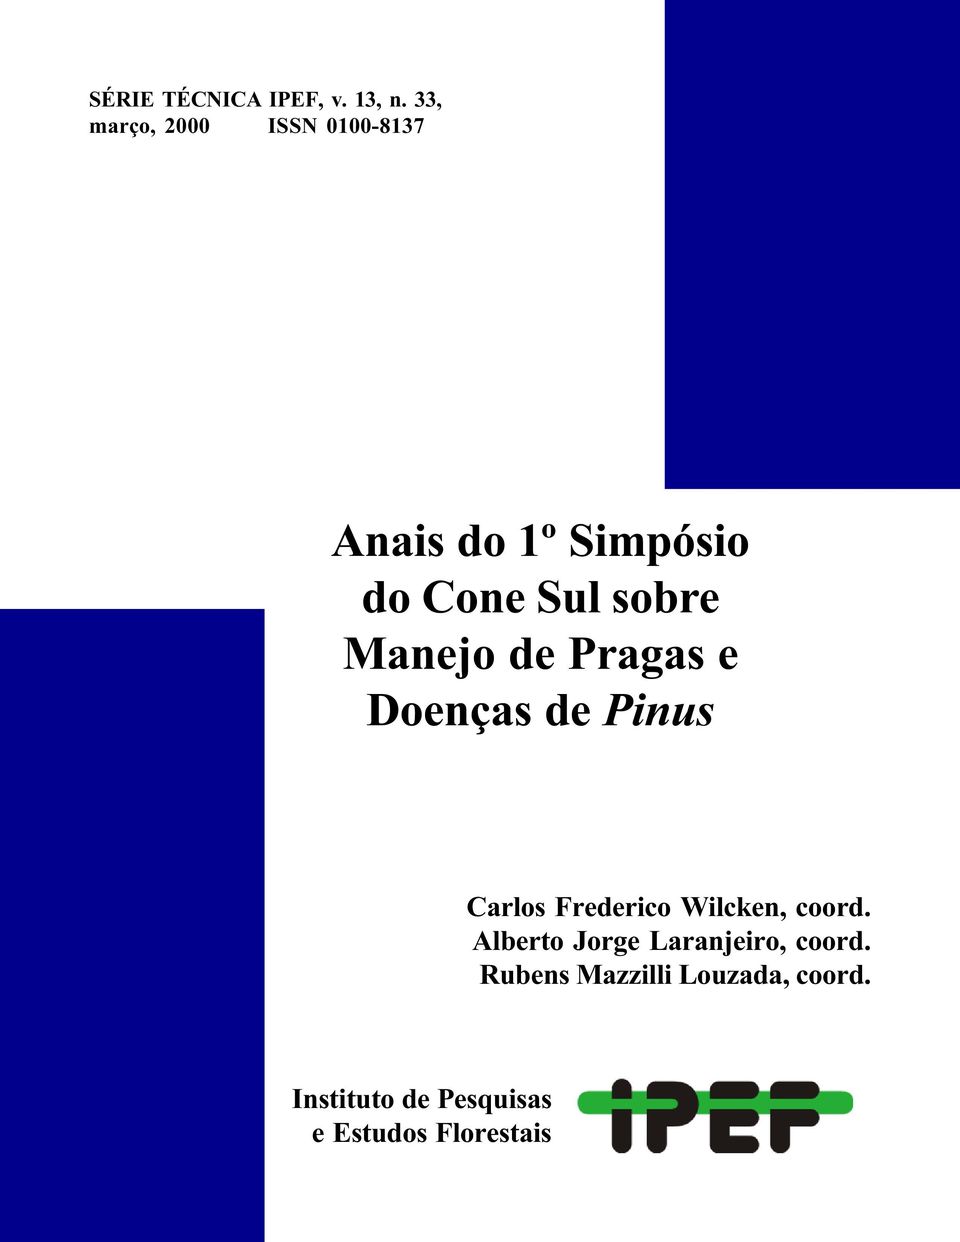 Manejo de Pragas e Doenças de Pinus Carlos Frederico Wilcken, coord.